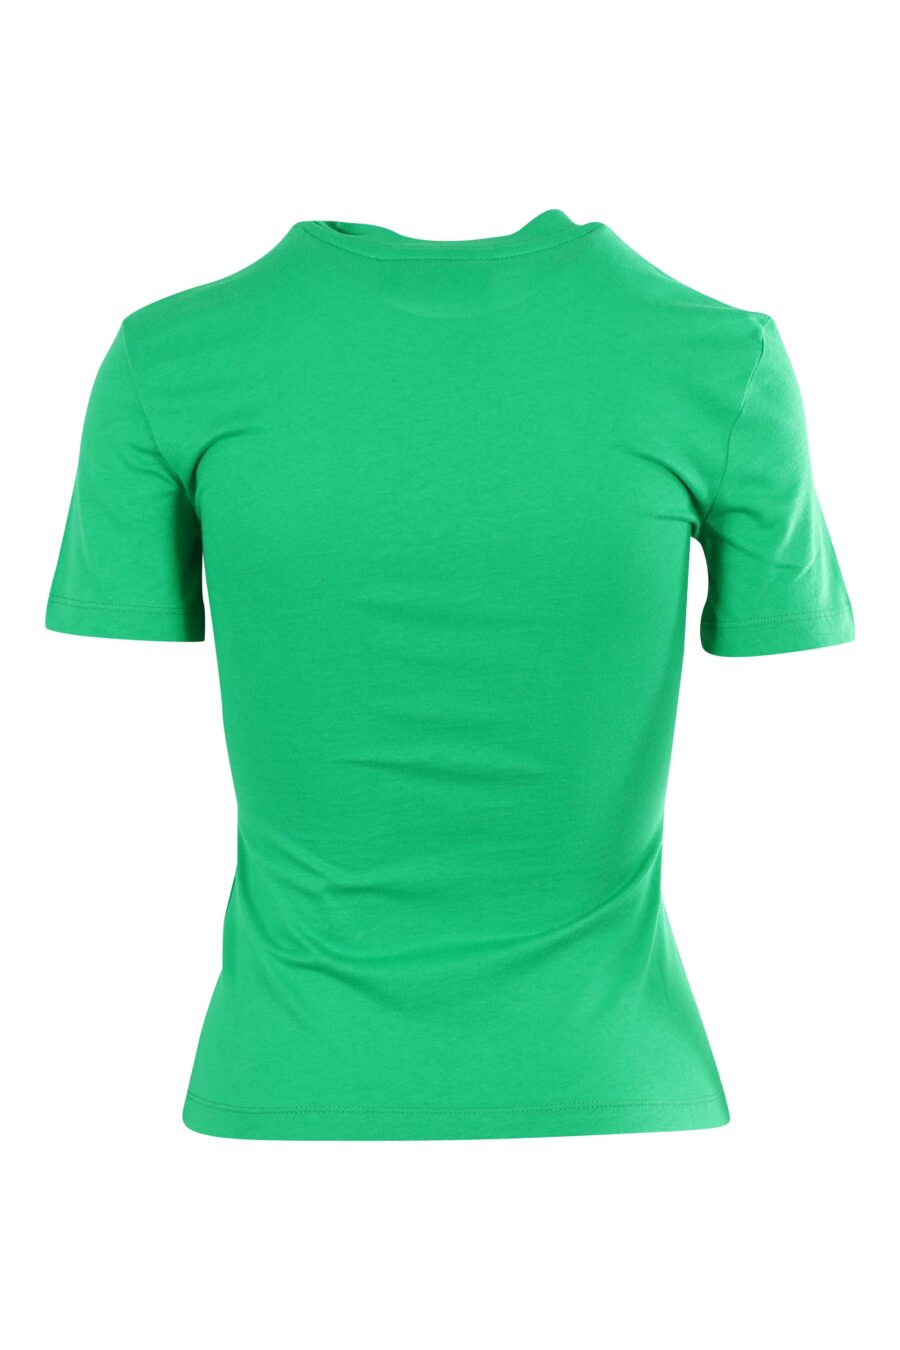 Camiseta verde claro con logo ojo y estrella - 8052672416780 2